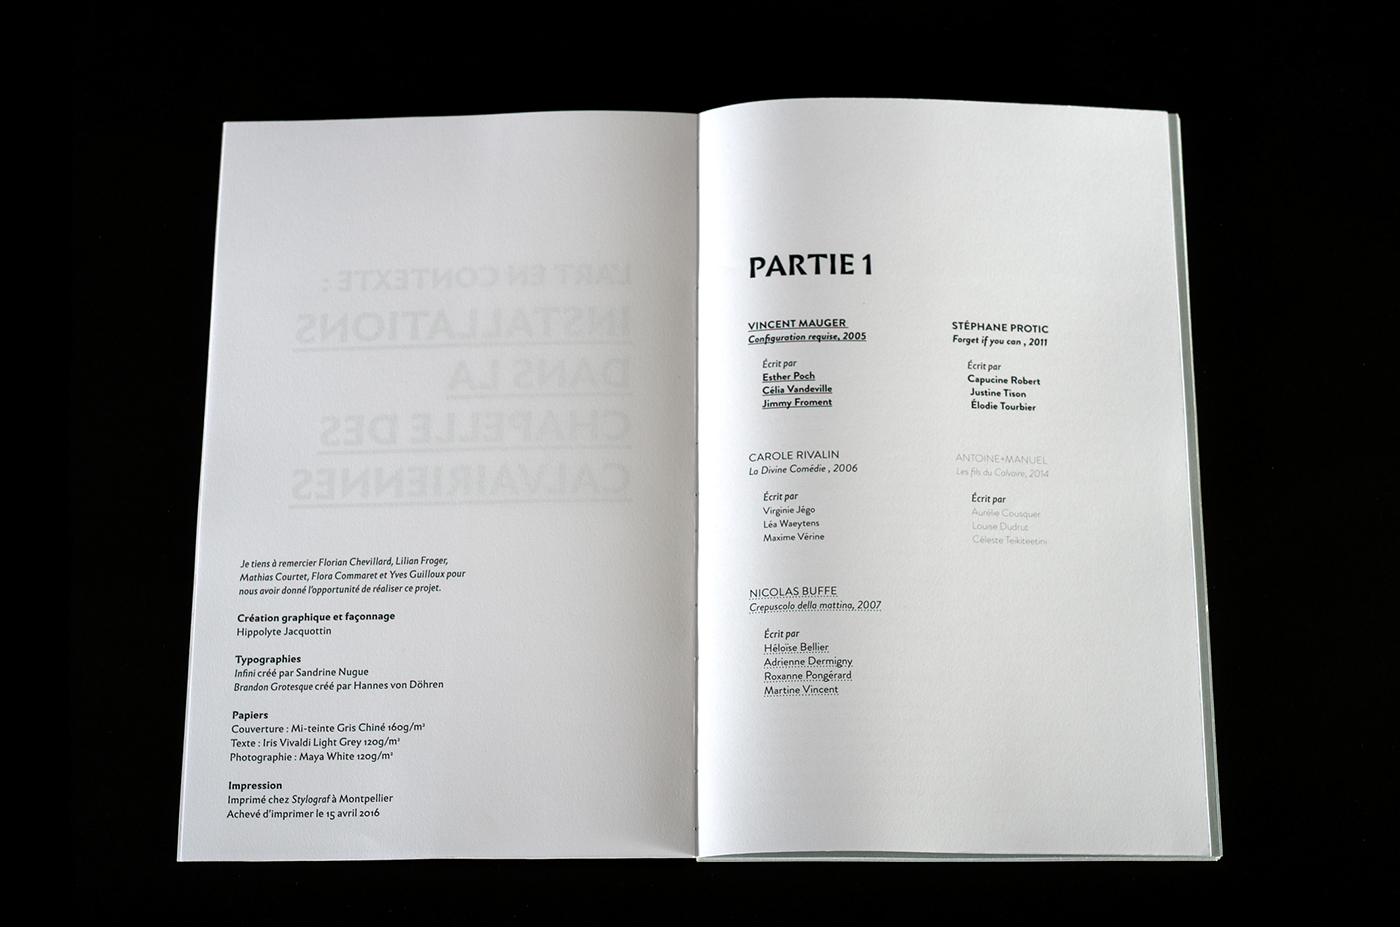 book edition art brandon grotesque infini chapelle calvairiennes research concept graphic design 